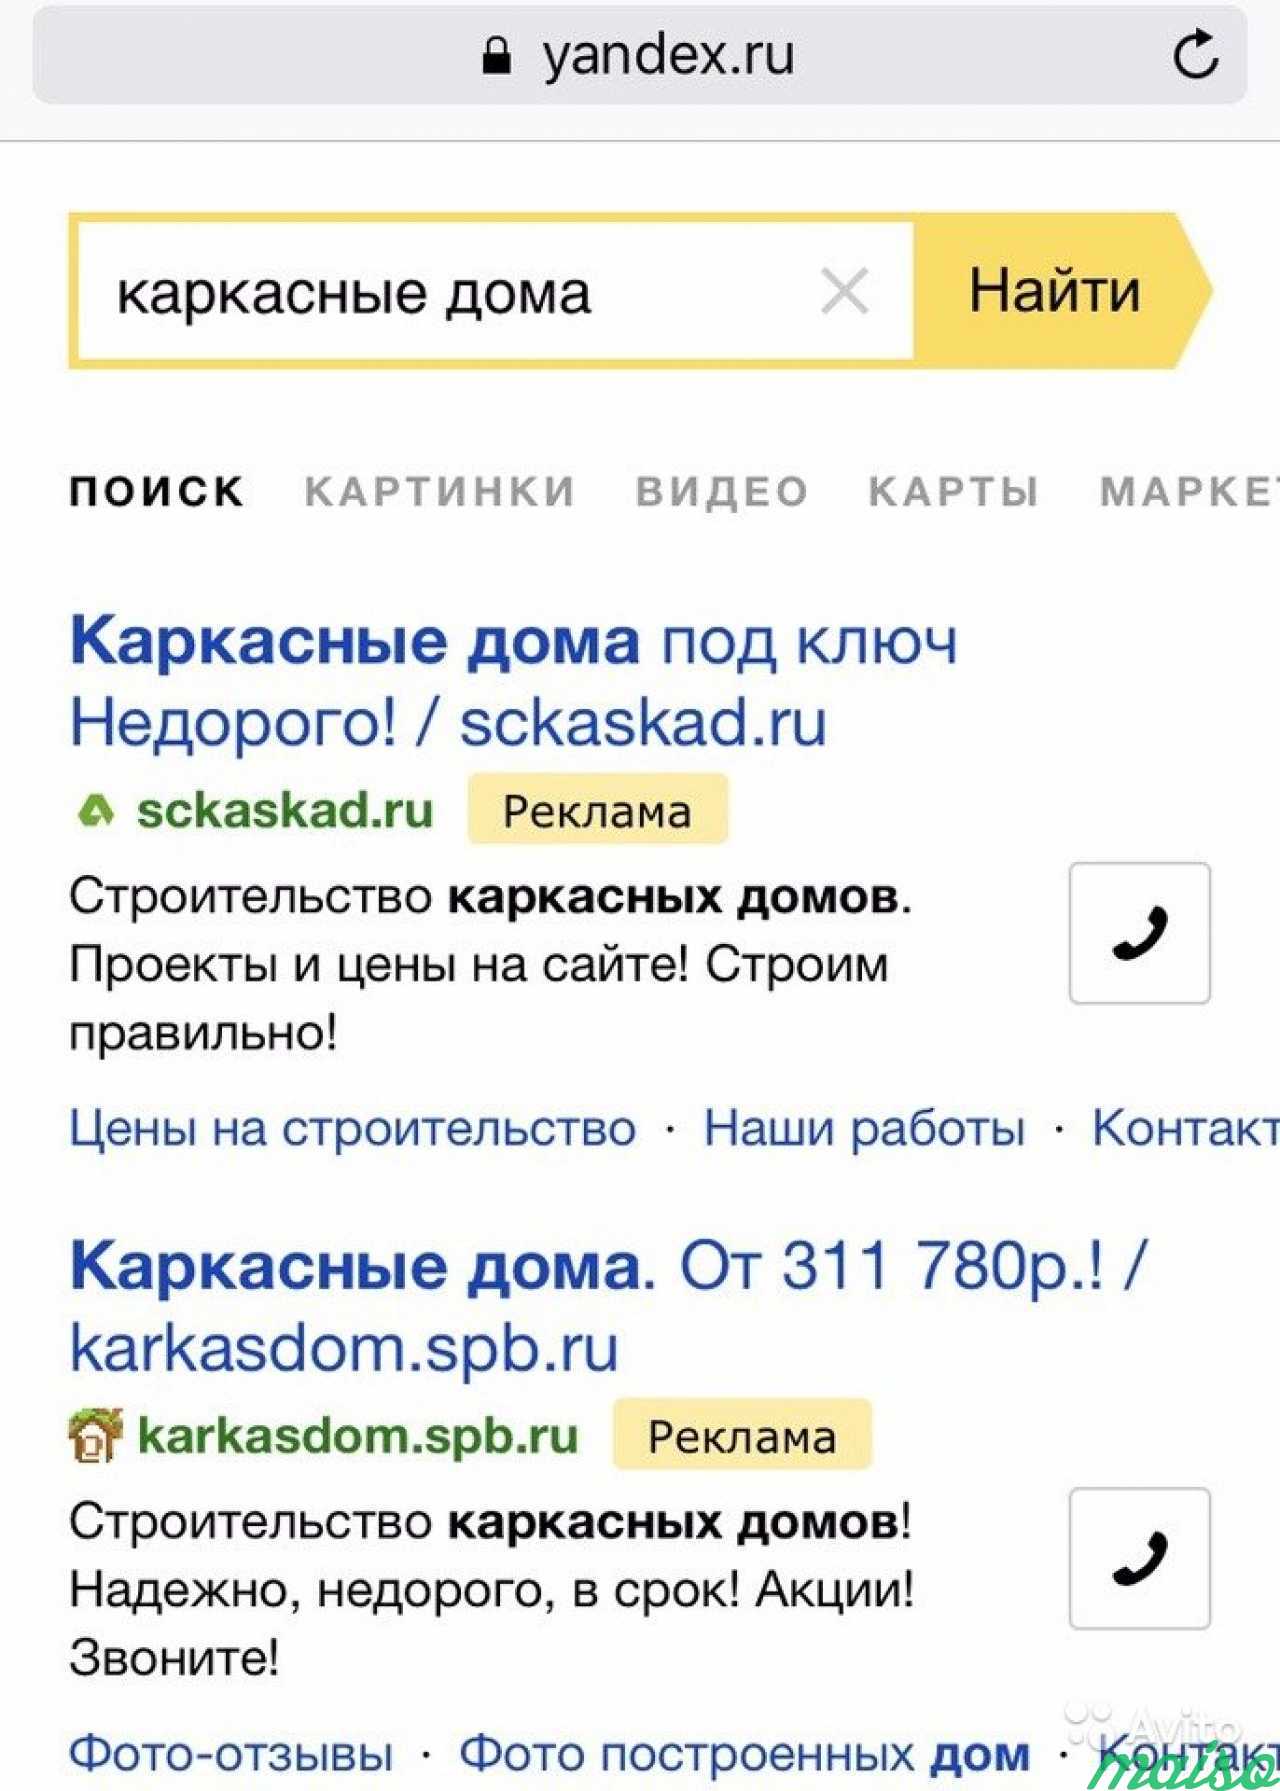 Продвижение сайтов и Интернет магазинов по Яндекс в Санкт-Петербурге. Фото 1